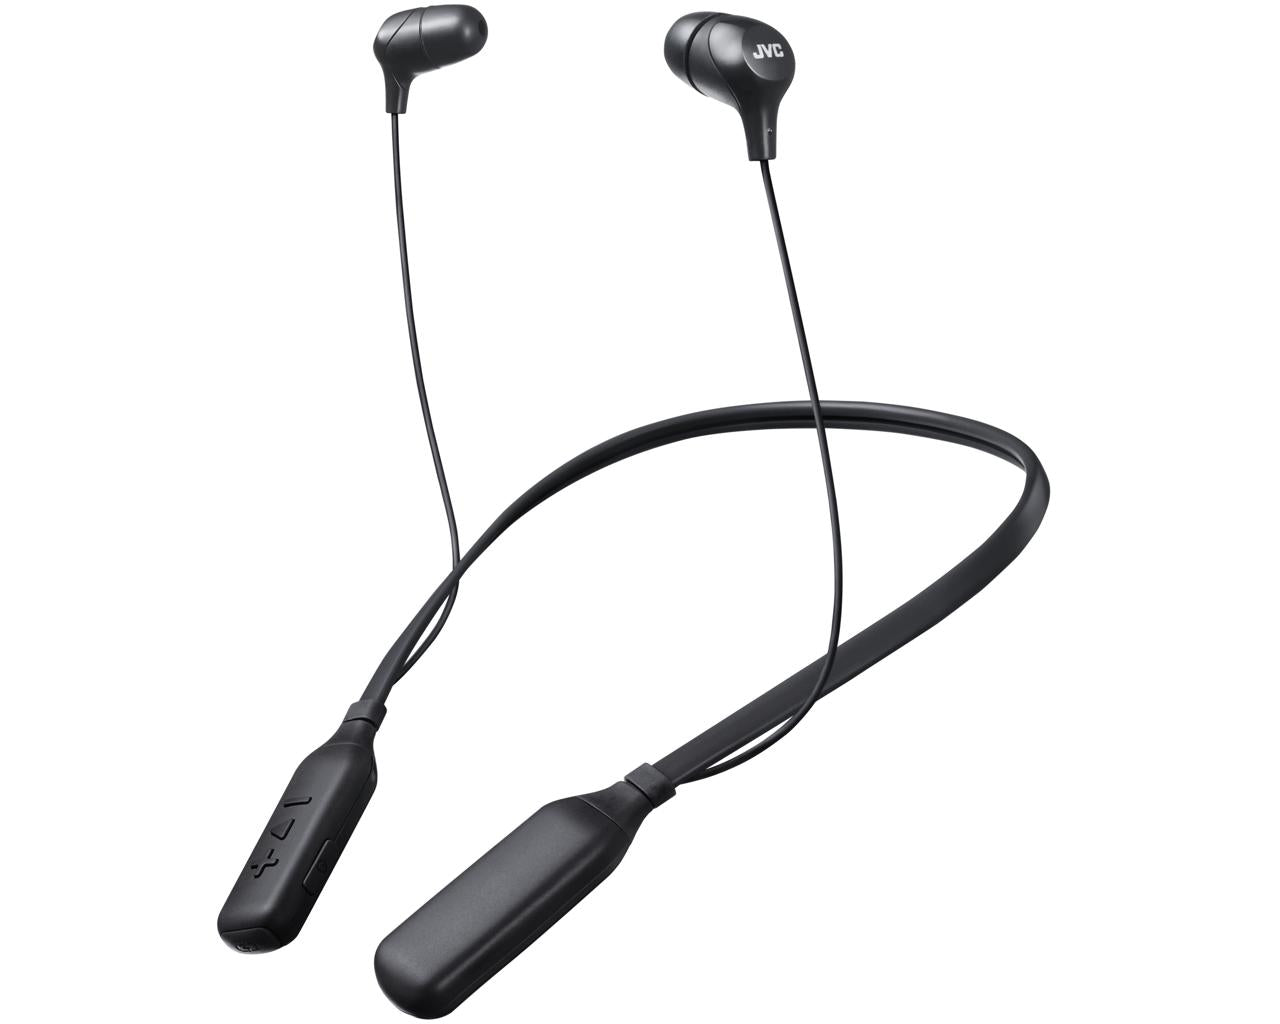 JVC Wireless In-ear Headphone HA-FX39BT